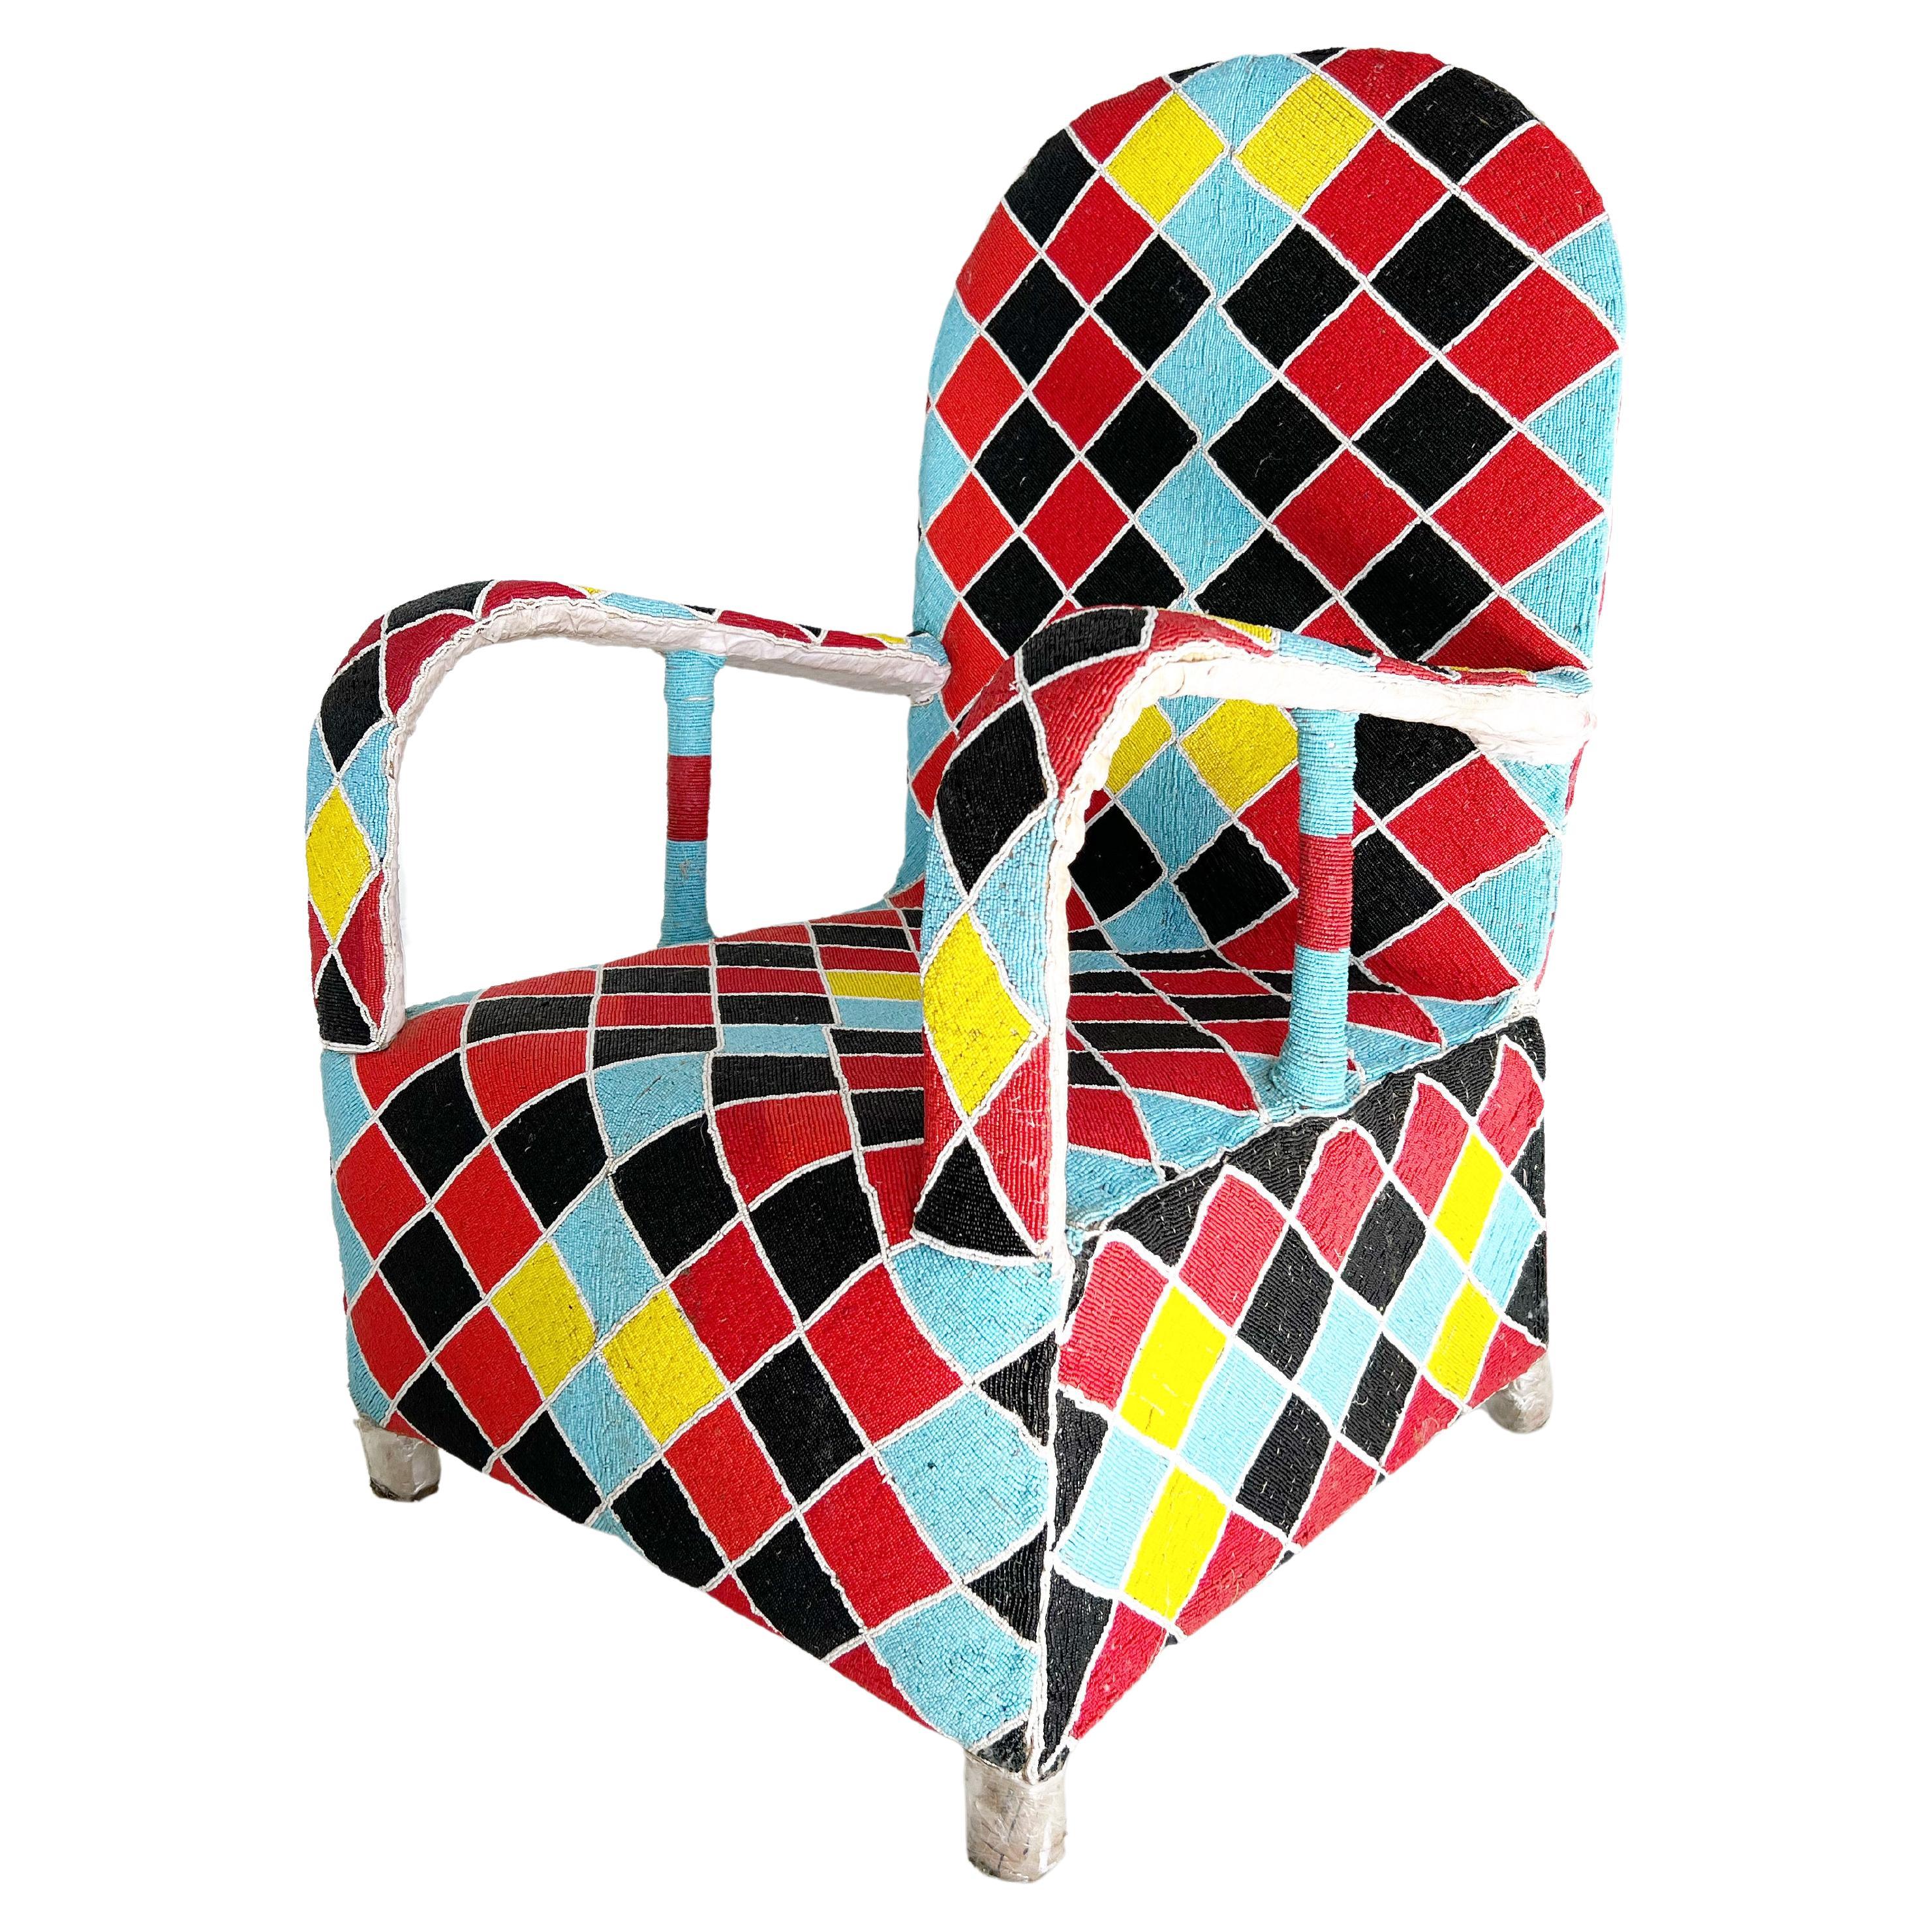 Afrikanischer Yoruba-Stuhl mit Perlenbesatz, mehrfarbig, 2 Stühle verfügbar